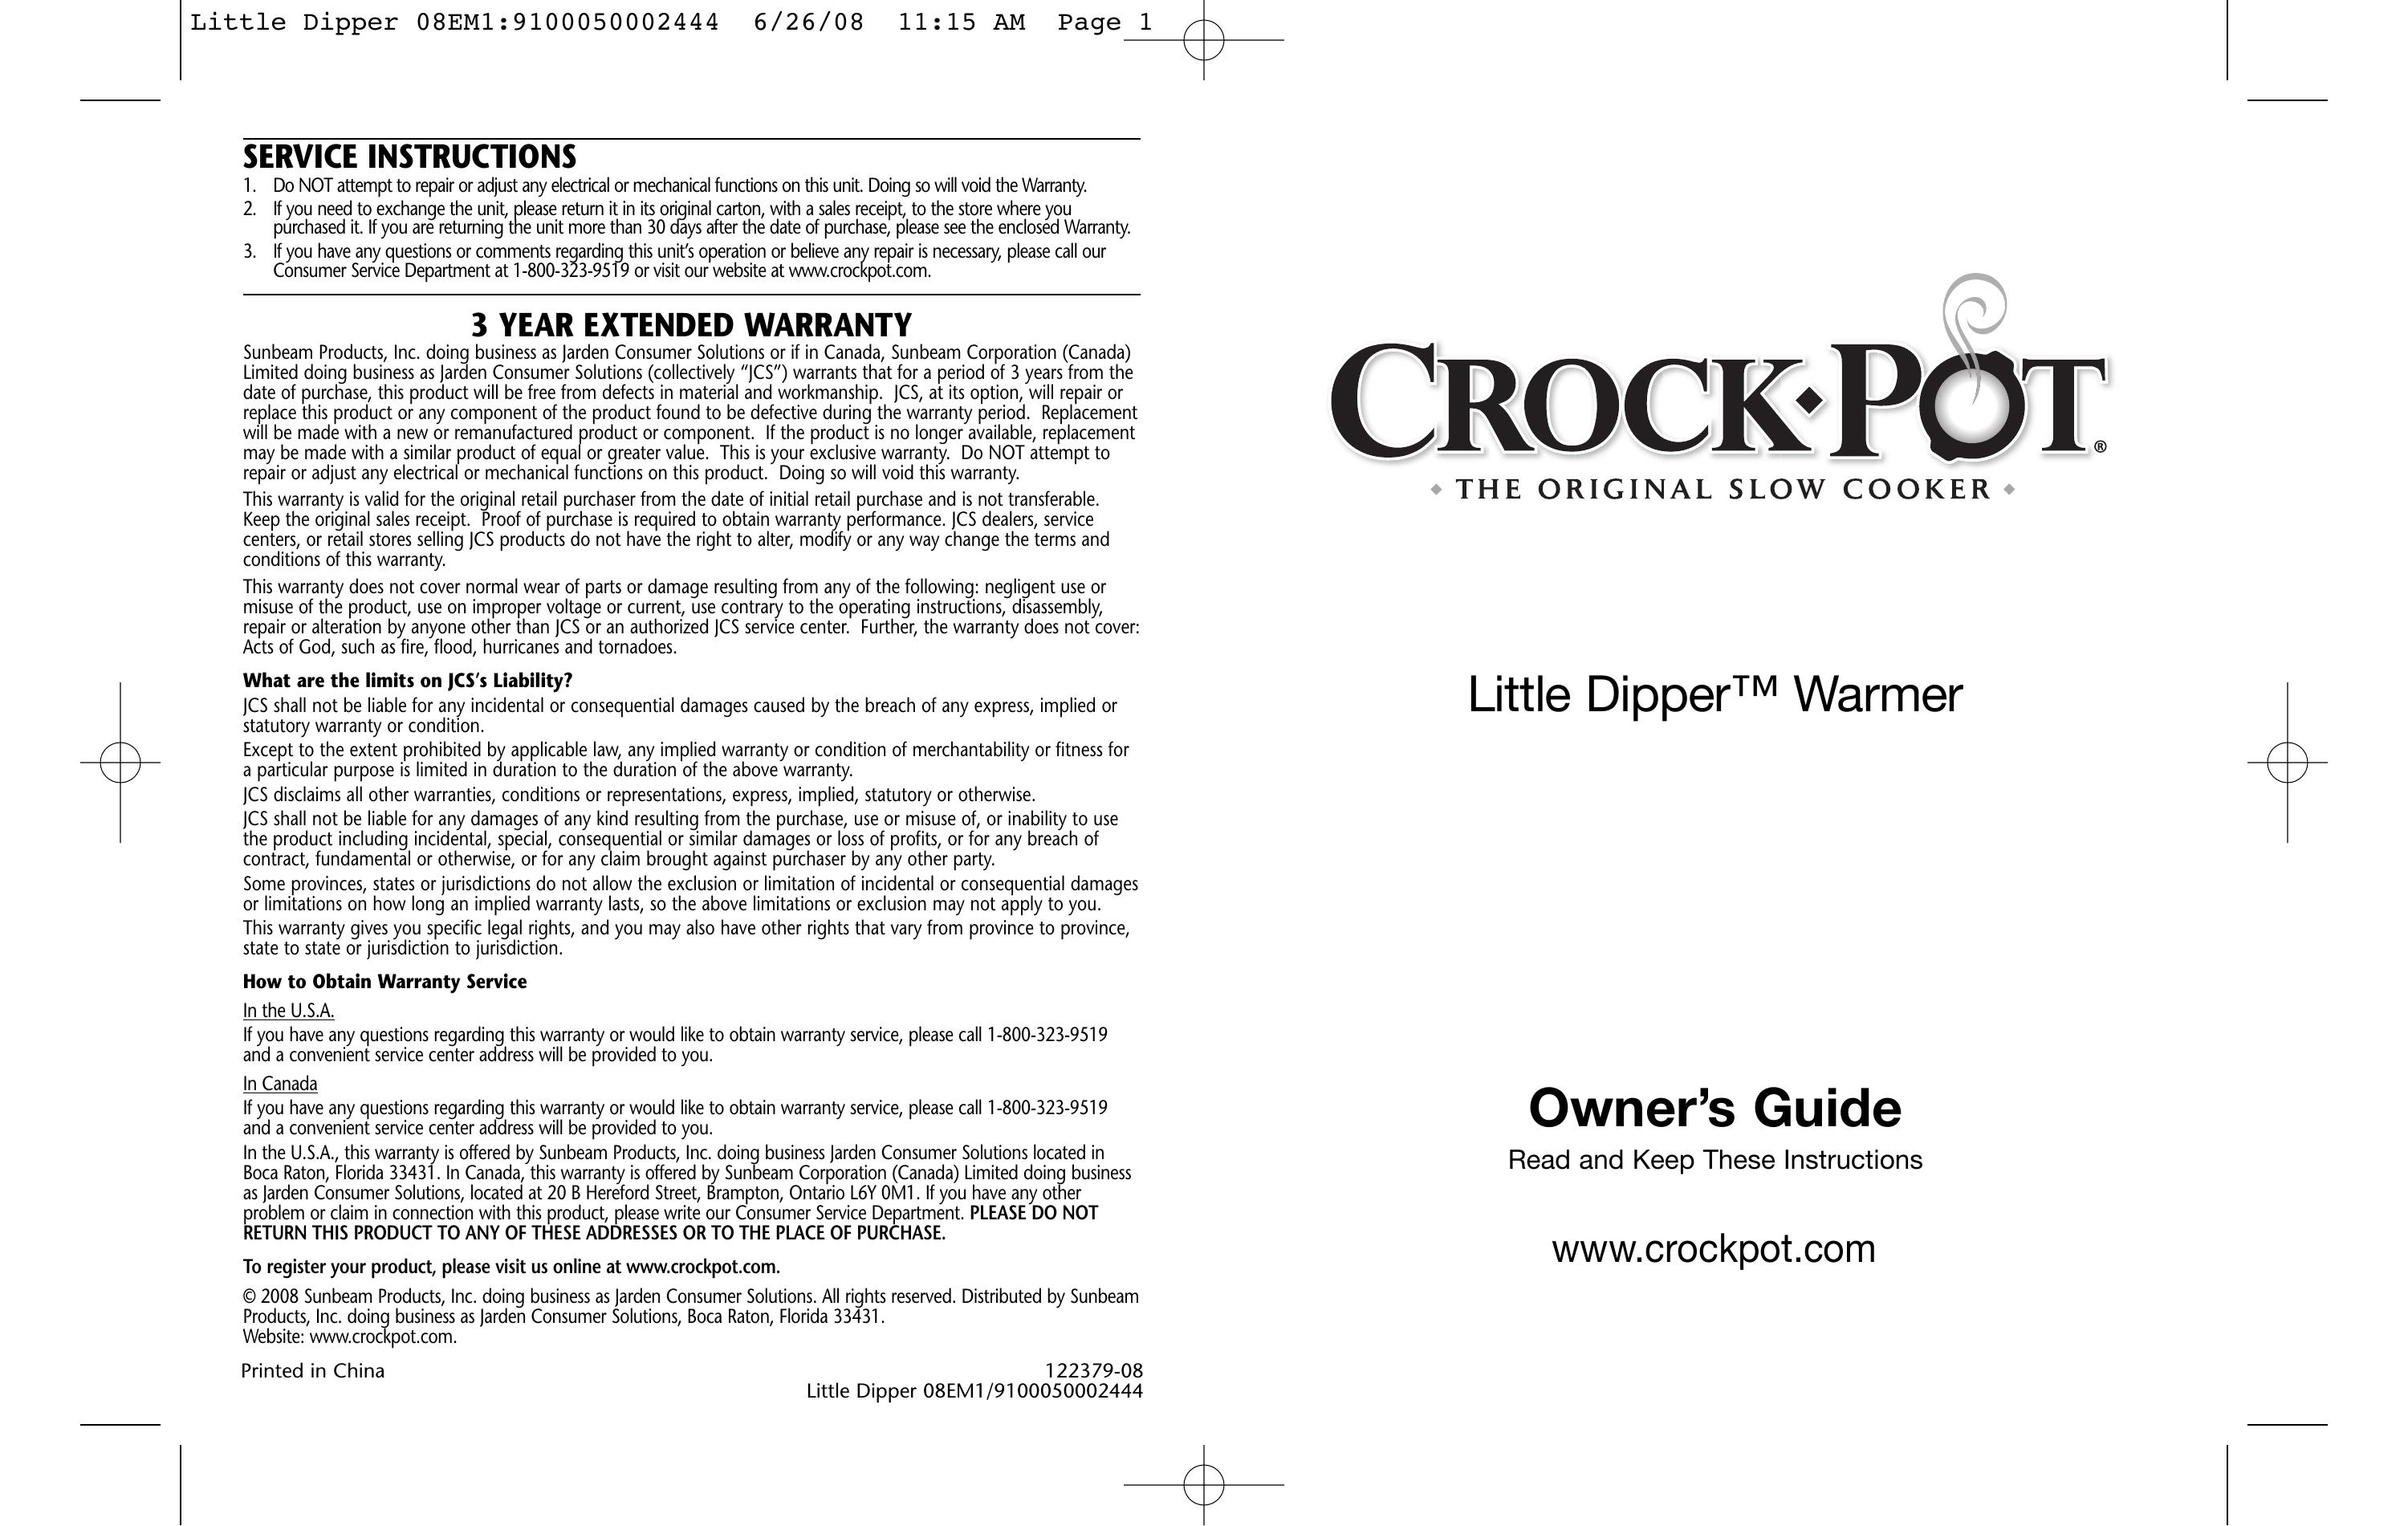 Crock-Pot 08EM1/9100050002444 Slow Cooker User Manual